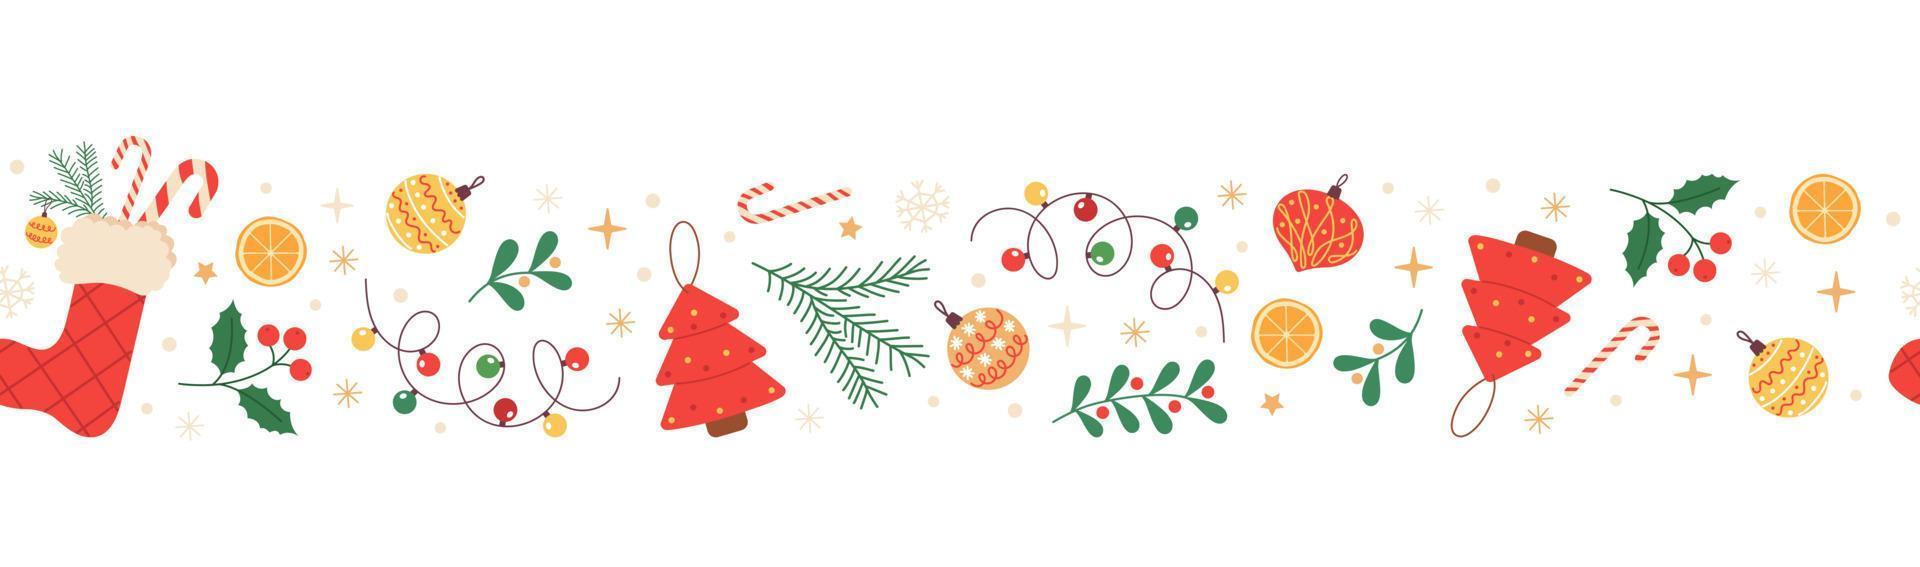 jul horisontell sömlös gräns med järnek, jul strumpa, snöflingor, godis sockerrör och jul dekorationer. festlig mönster för hälsning kort, banderoller, inbjudningar, textilier. vektor